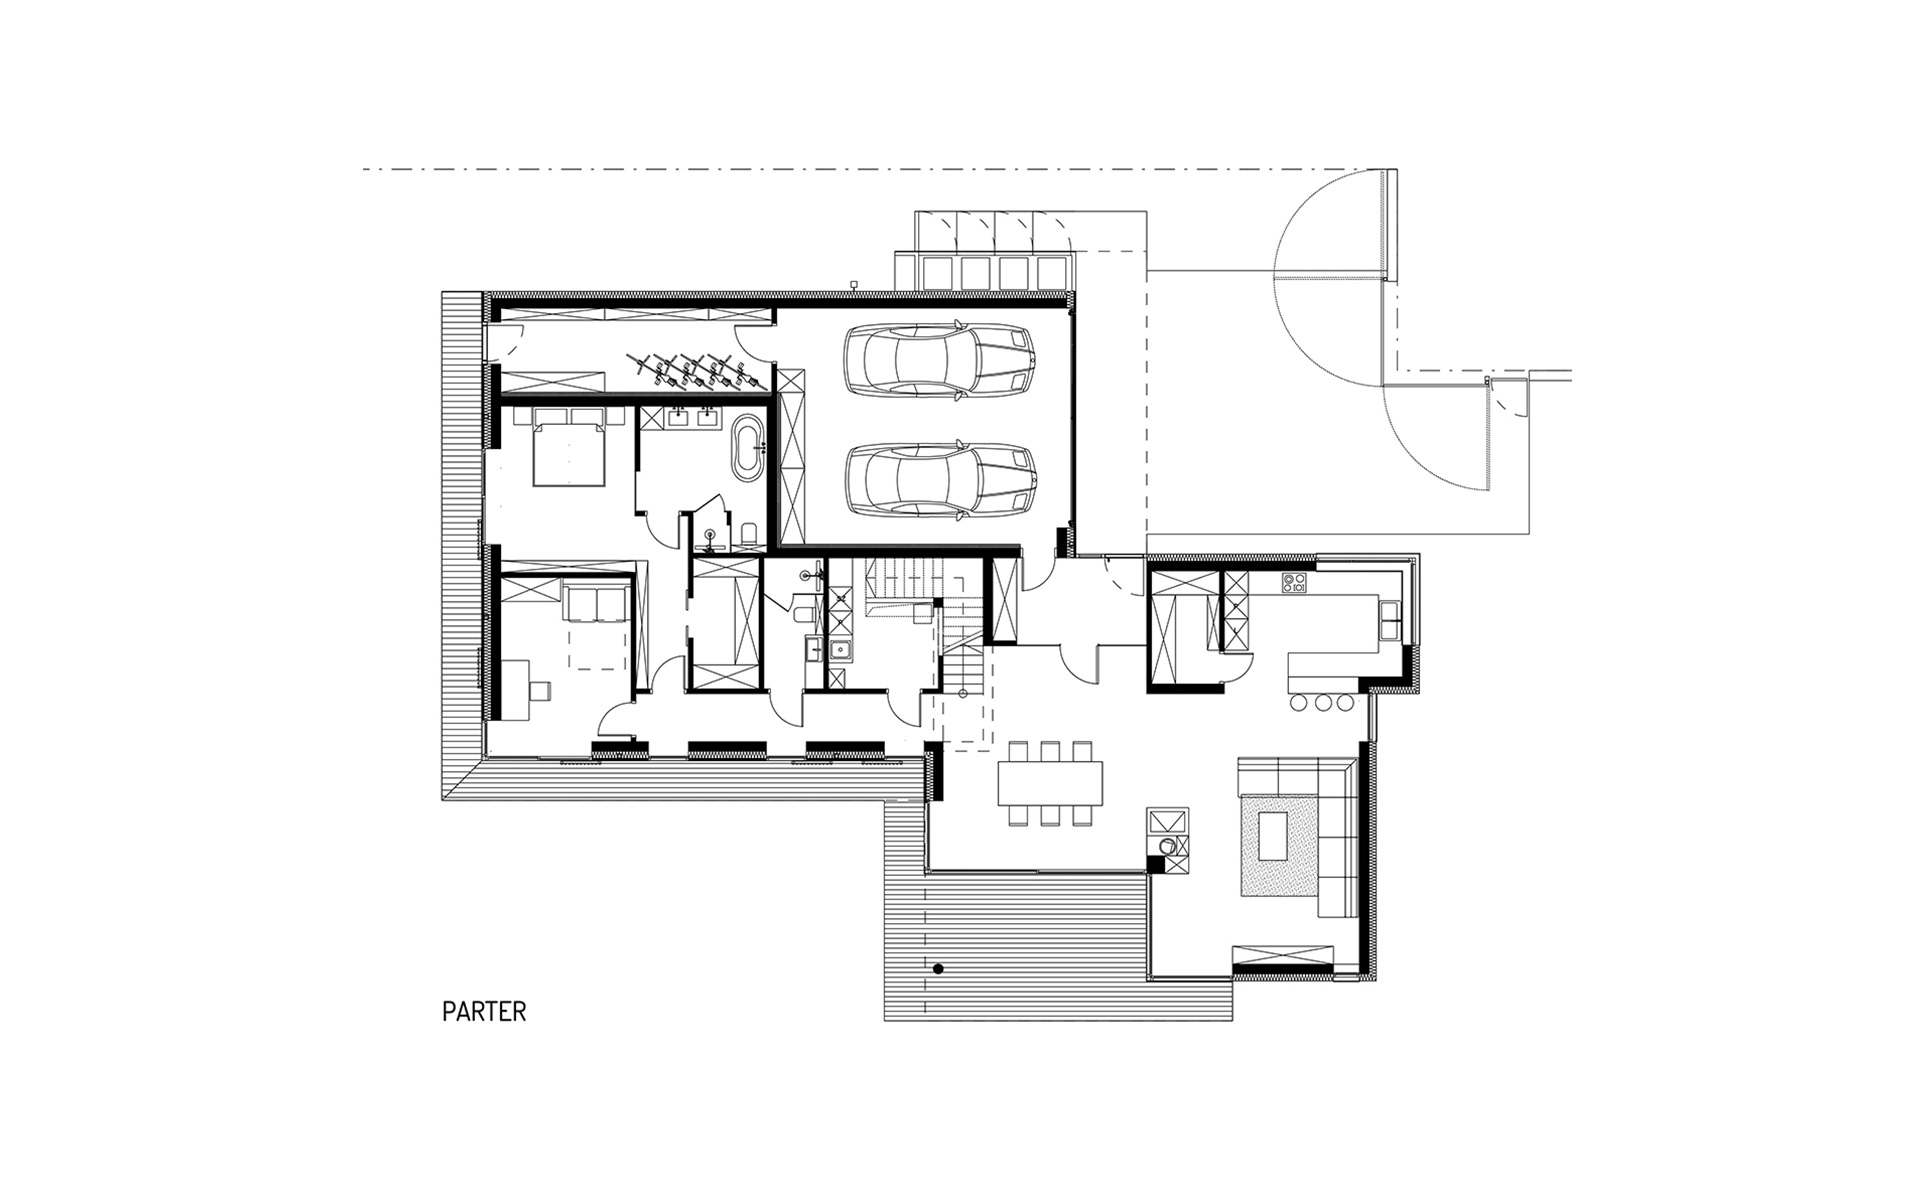 Obraz projektu parteru domu piętrowego z płaskim dachem